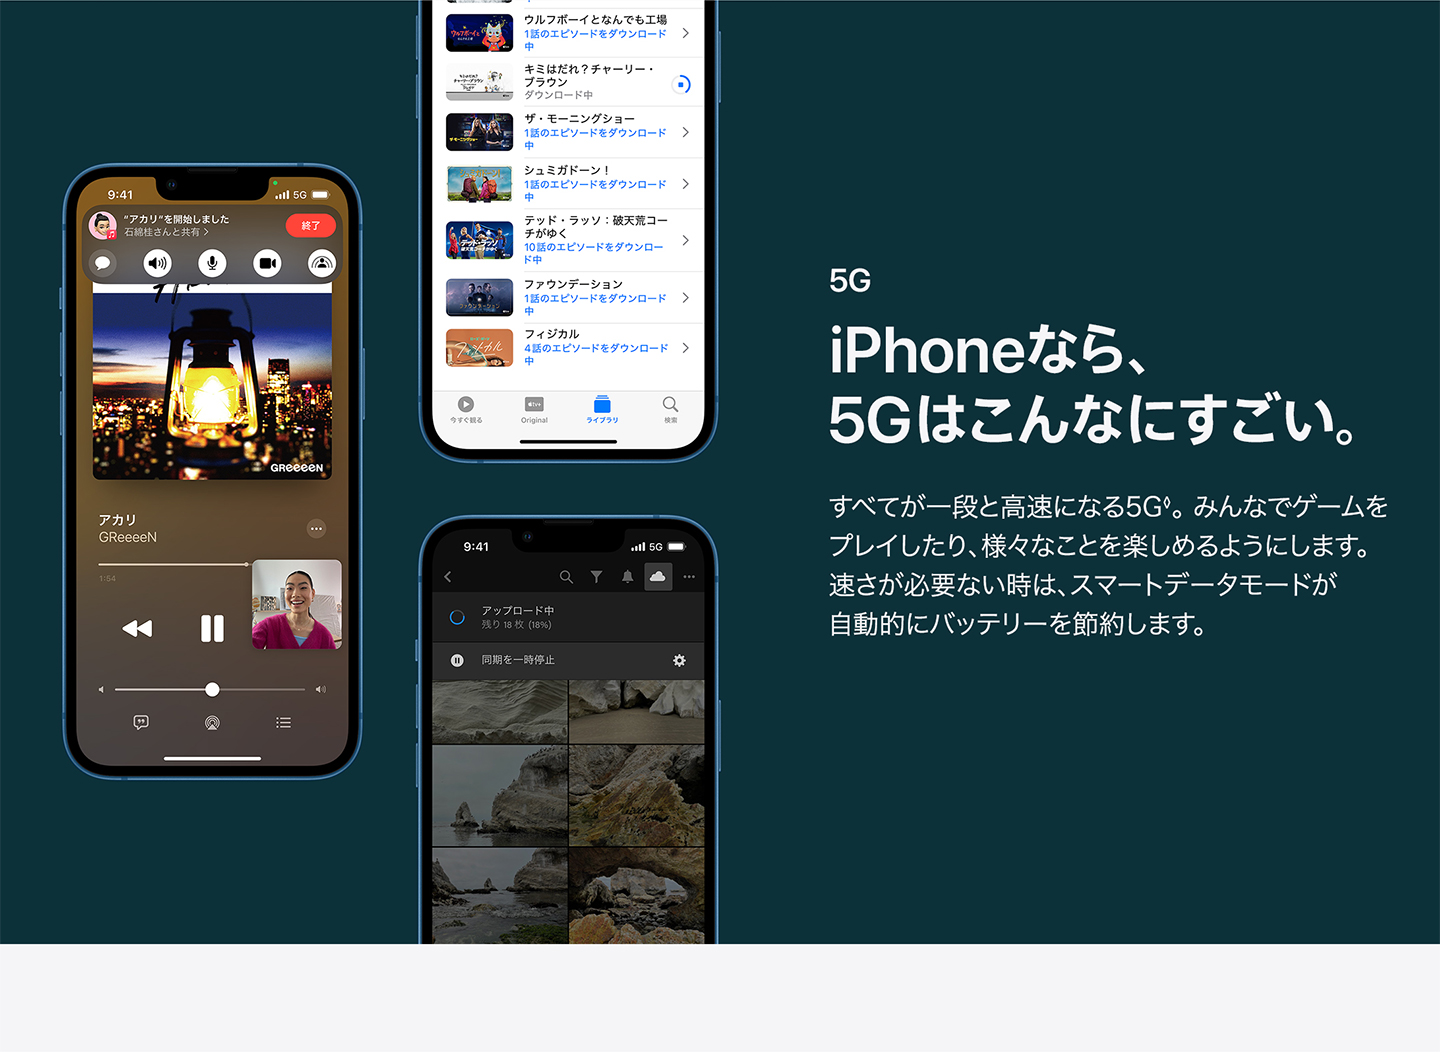 iPhoneなら、5Gはこんなにすごい。